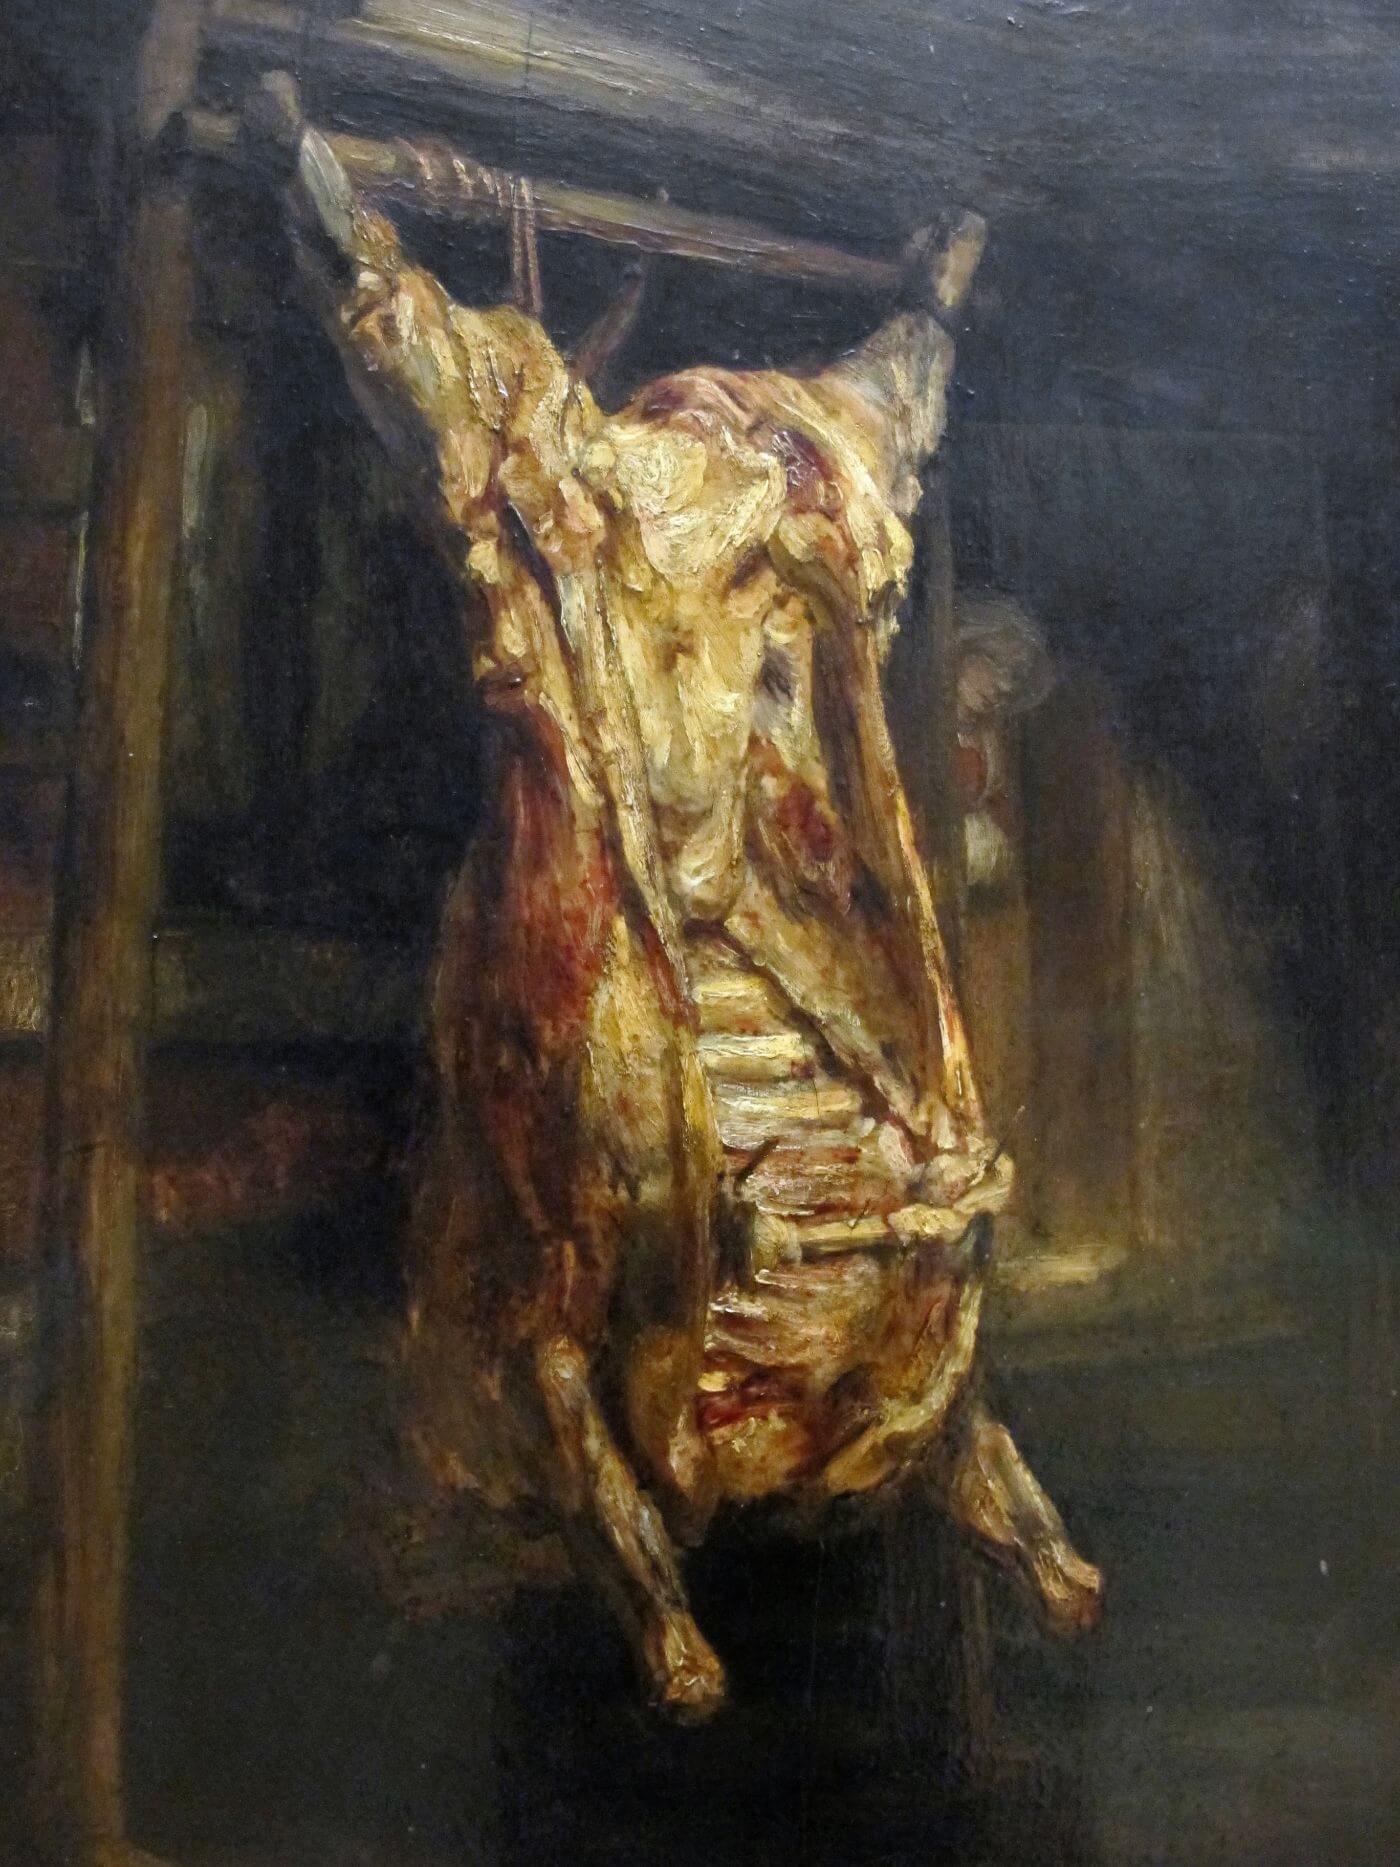 Slaugtered Ox Painting - Meri Deewar - MeriDeewar